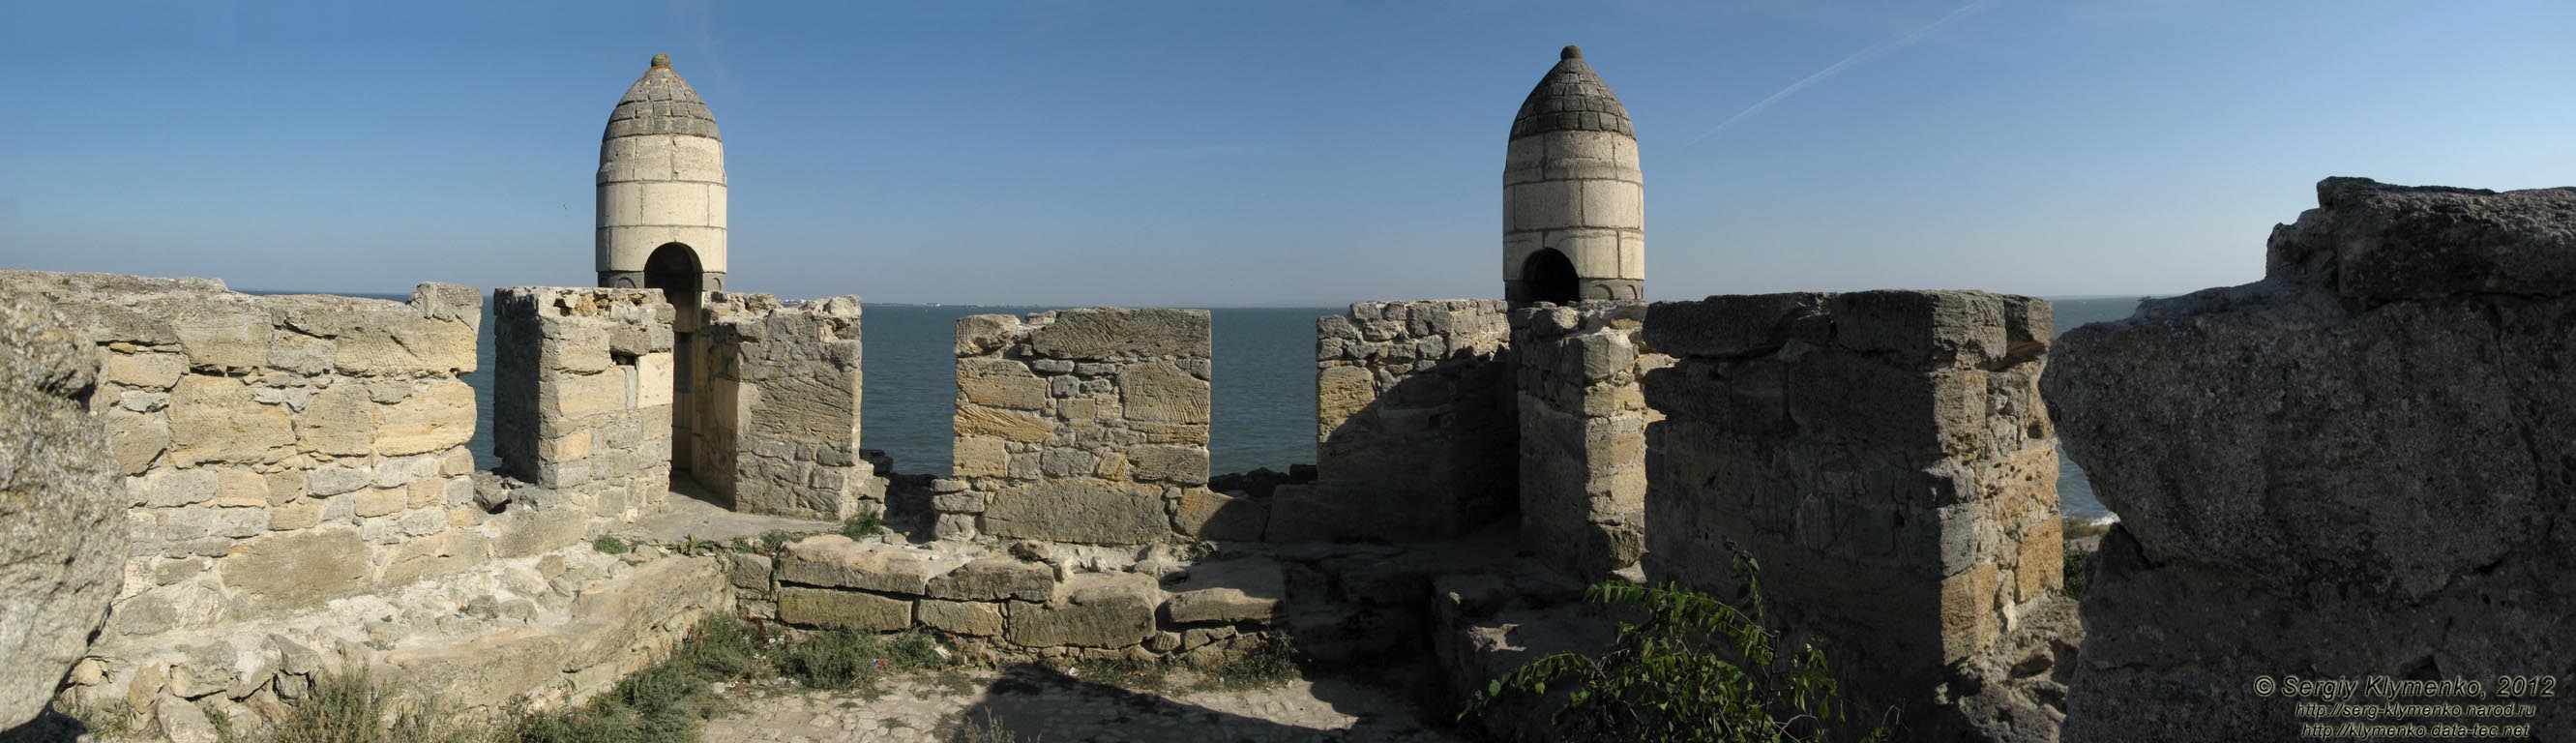 Крым, Керчь. Фото. Крепость Ени-Кале. Водяная башня, вид изнутри башни. Панорама ~120°.